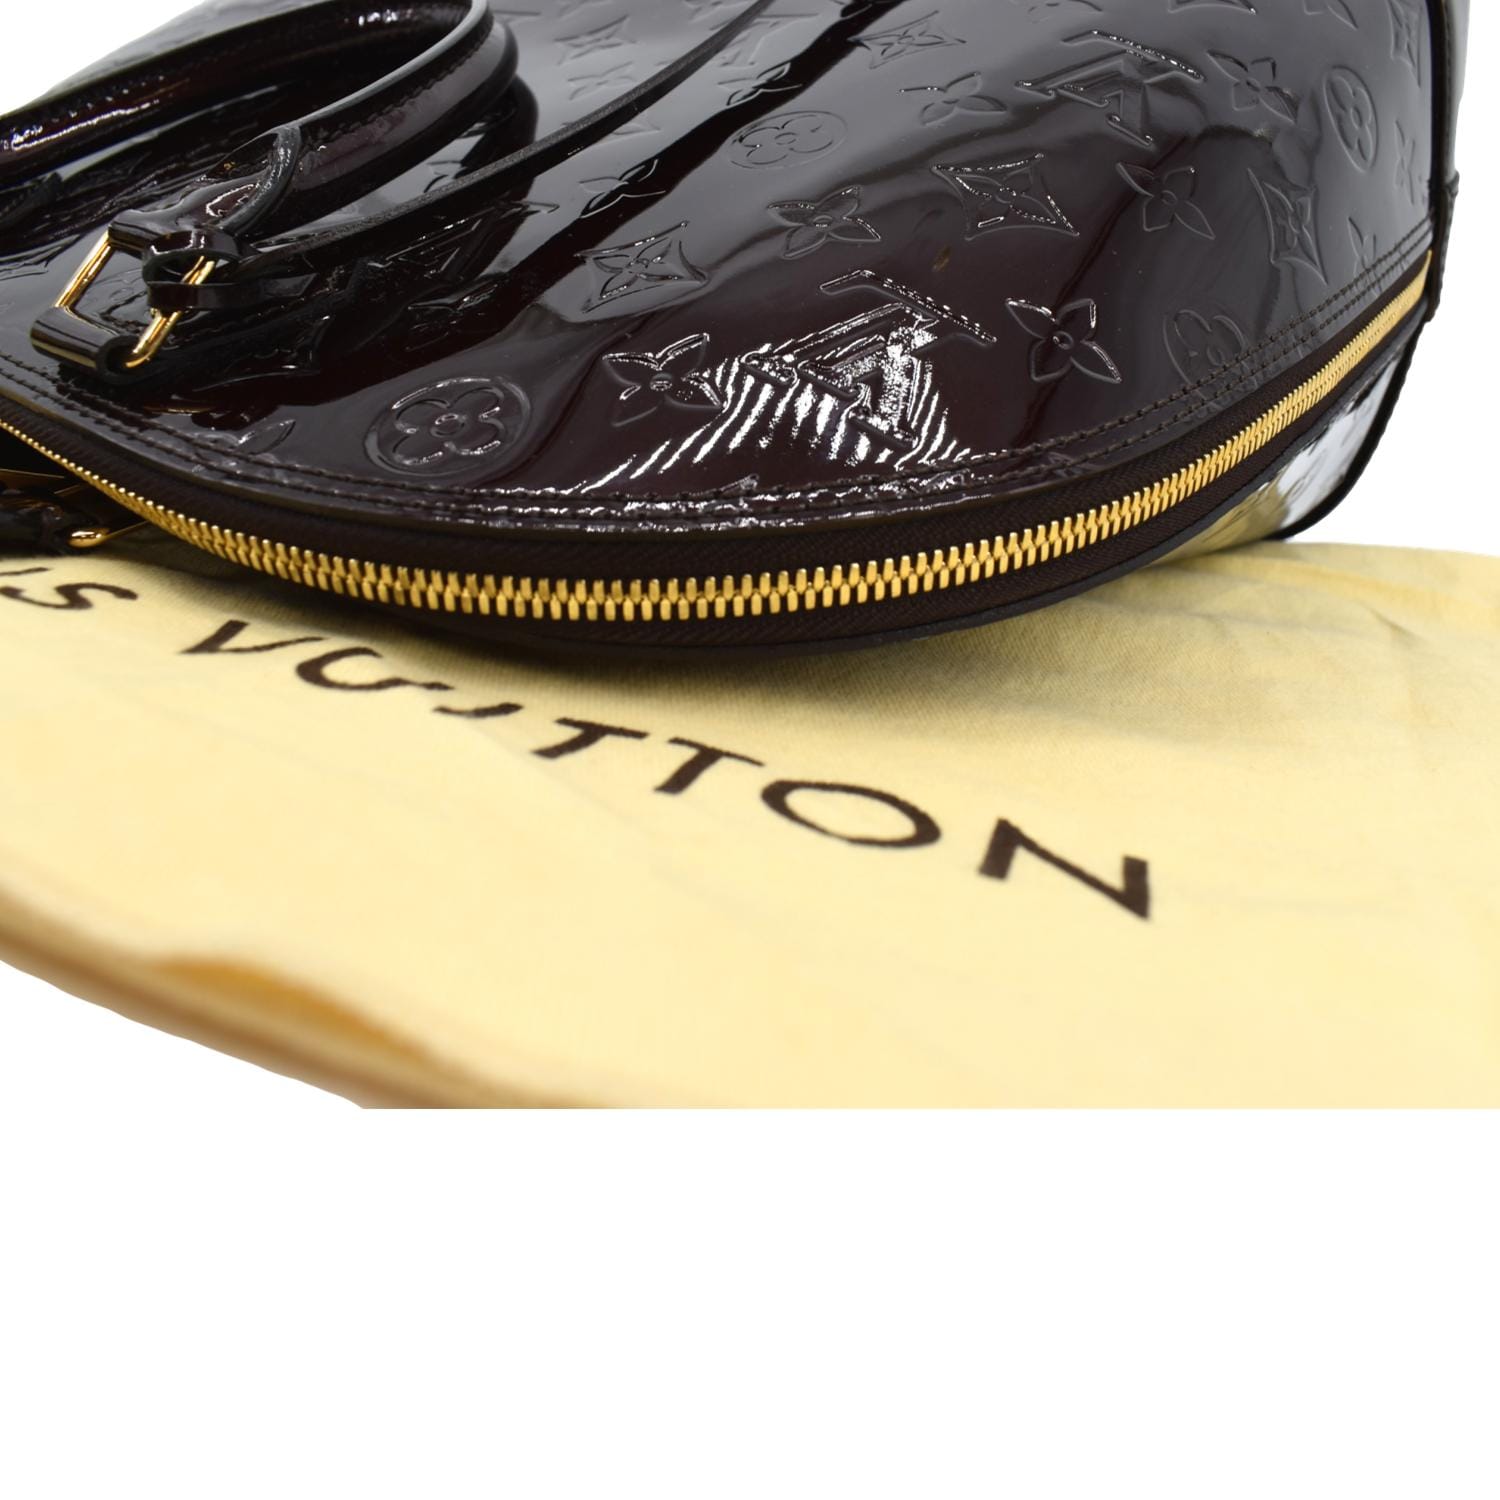 Louis Vuitton Alma Handbag Monogram Vernis GM Purple 2377221